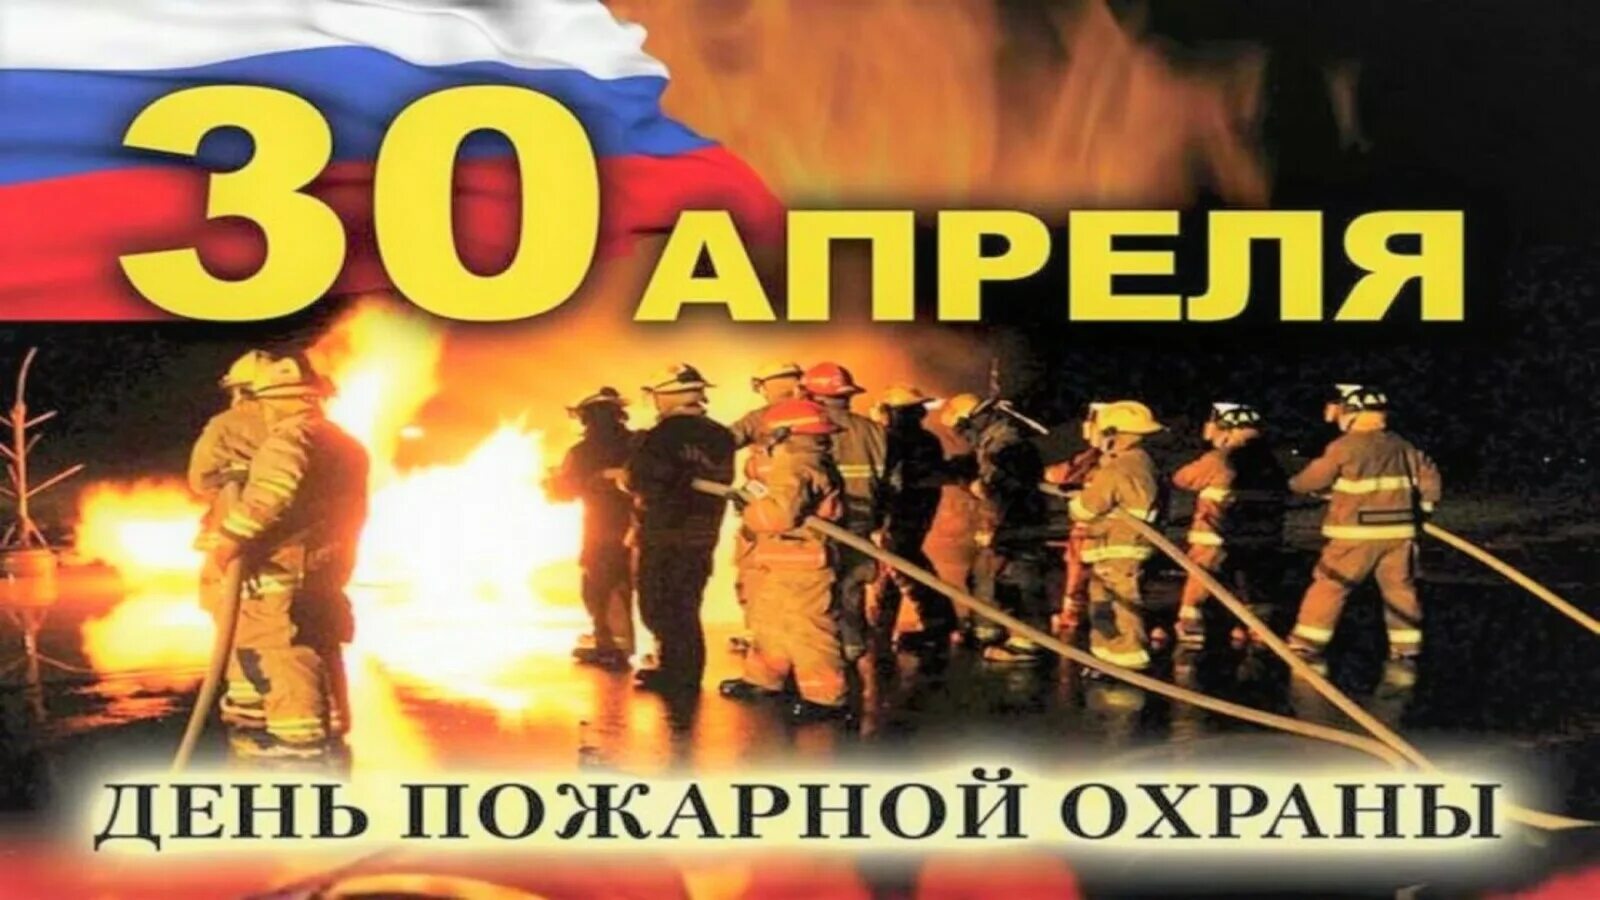 30 апреля есть праздник. С днем пожарной охраны. С днем пожарника. 30 Апреля день пожарной охраны России. С днем пожарной охраны 30 апреля.